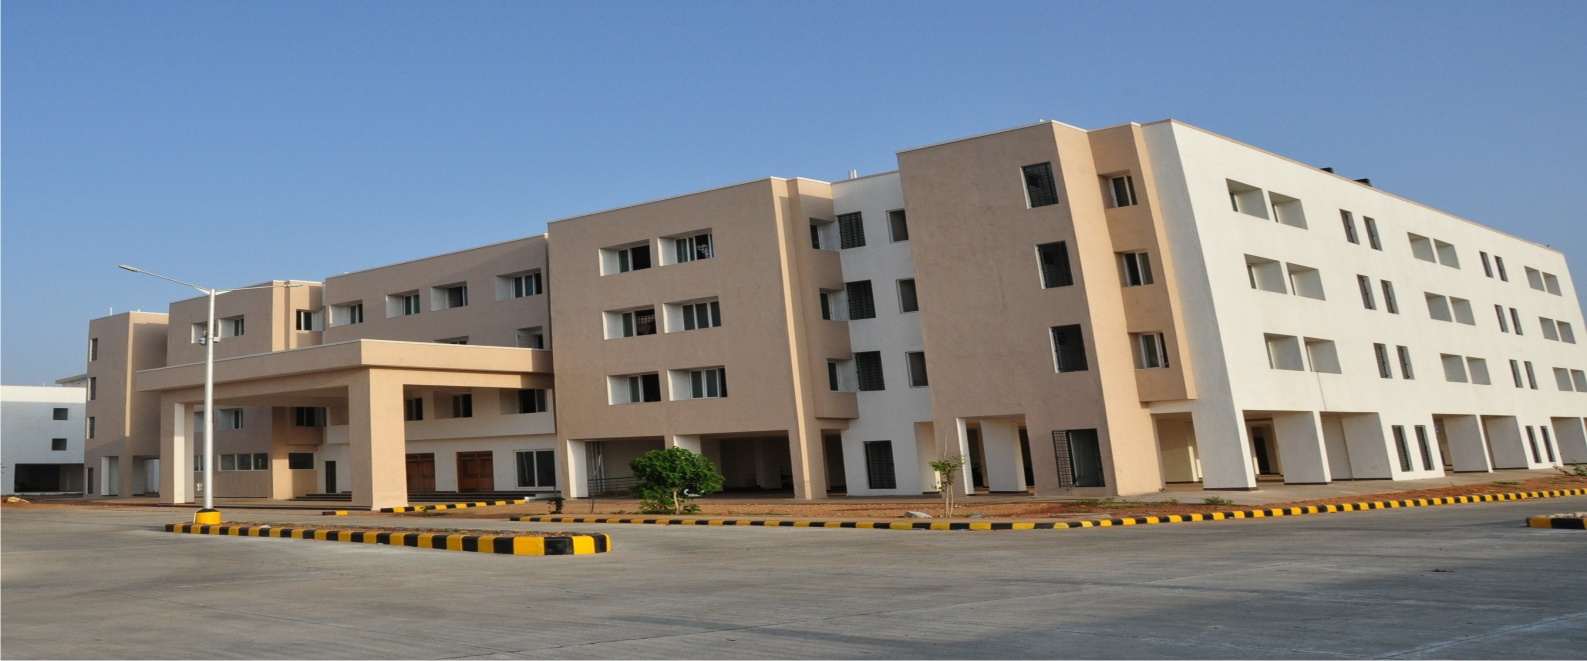 Koppal Institute of Medical Sciences